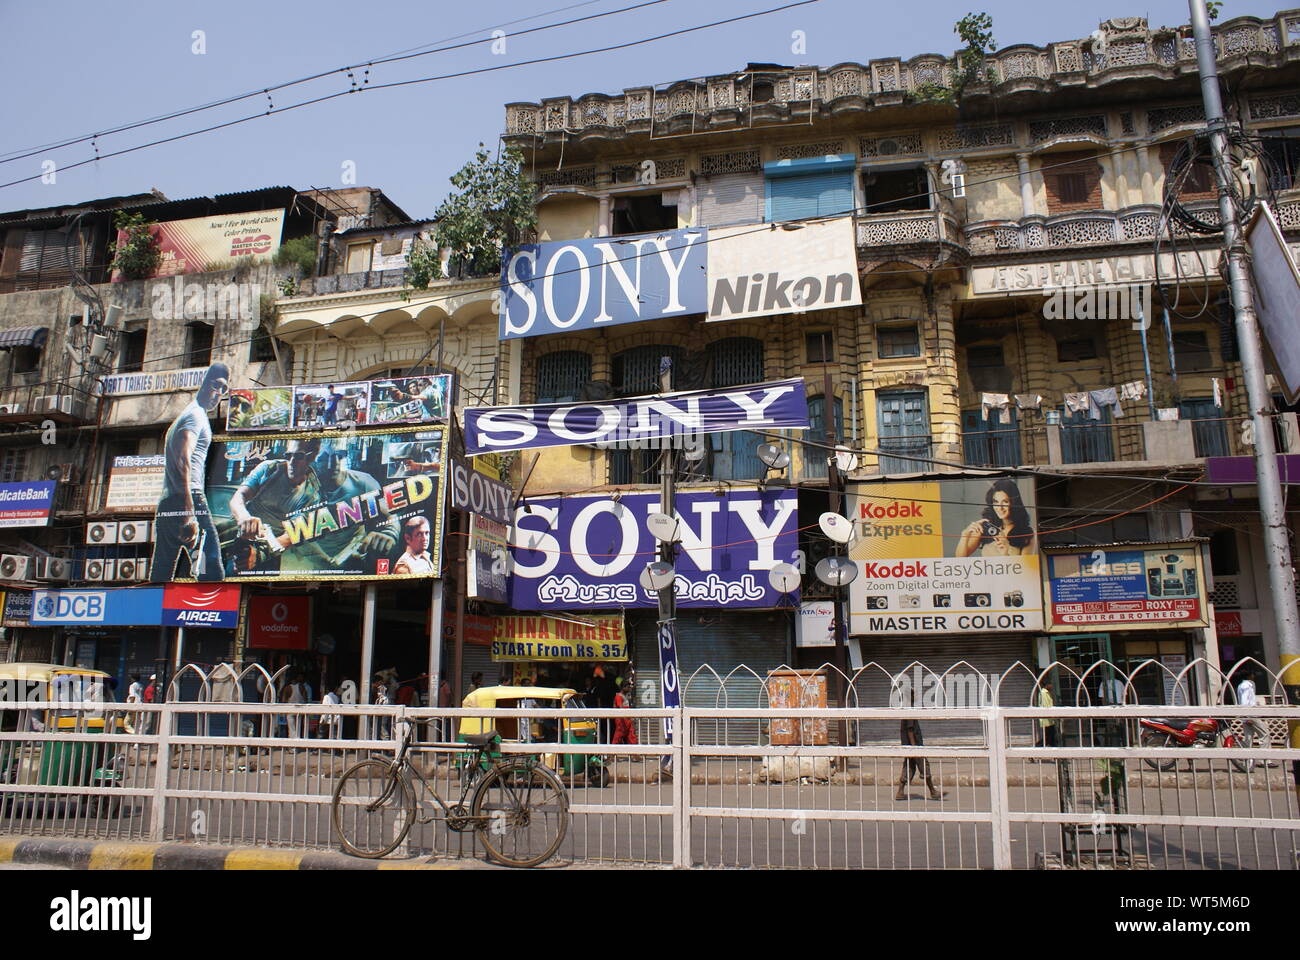 La mondialisation du commerce .la publicité commerciale dans une ville indienne : Old Delhi Banque D'Images